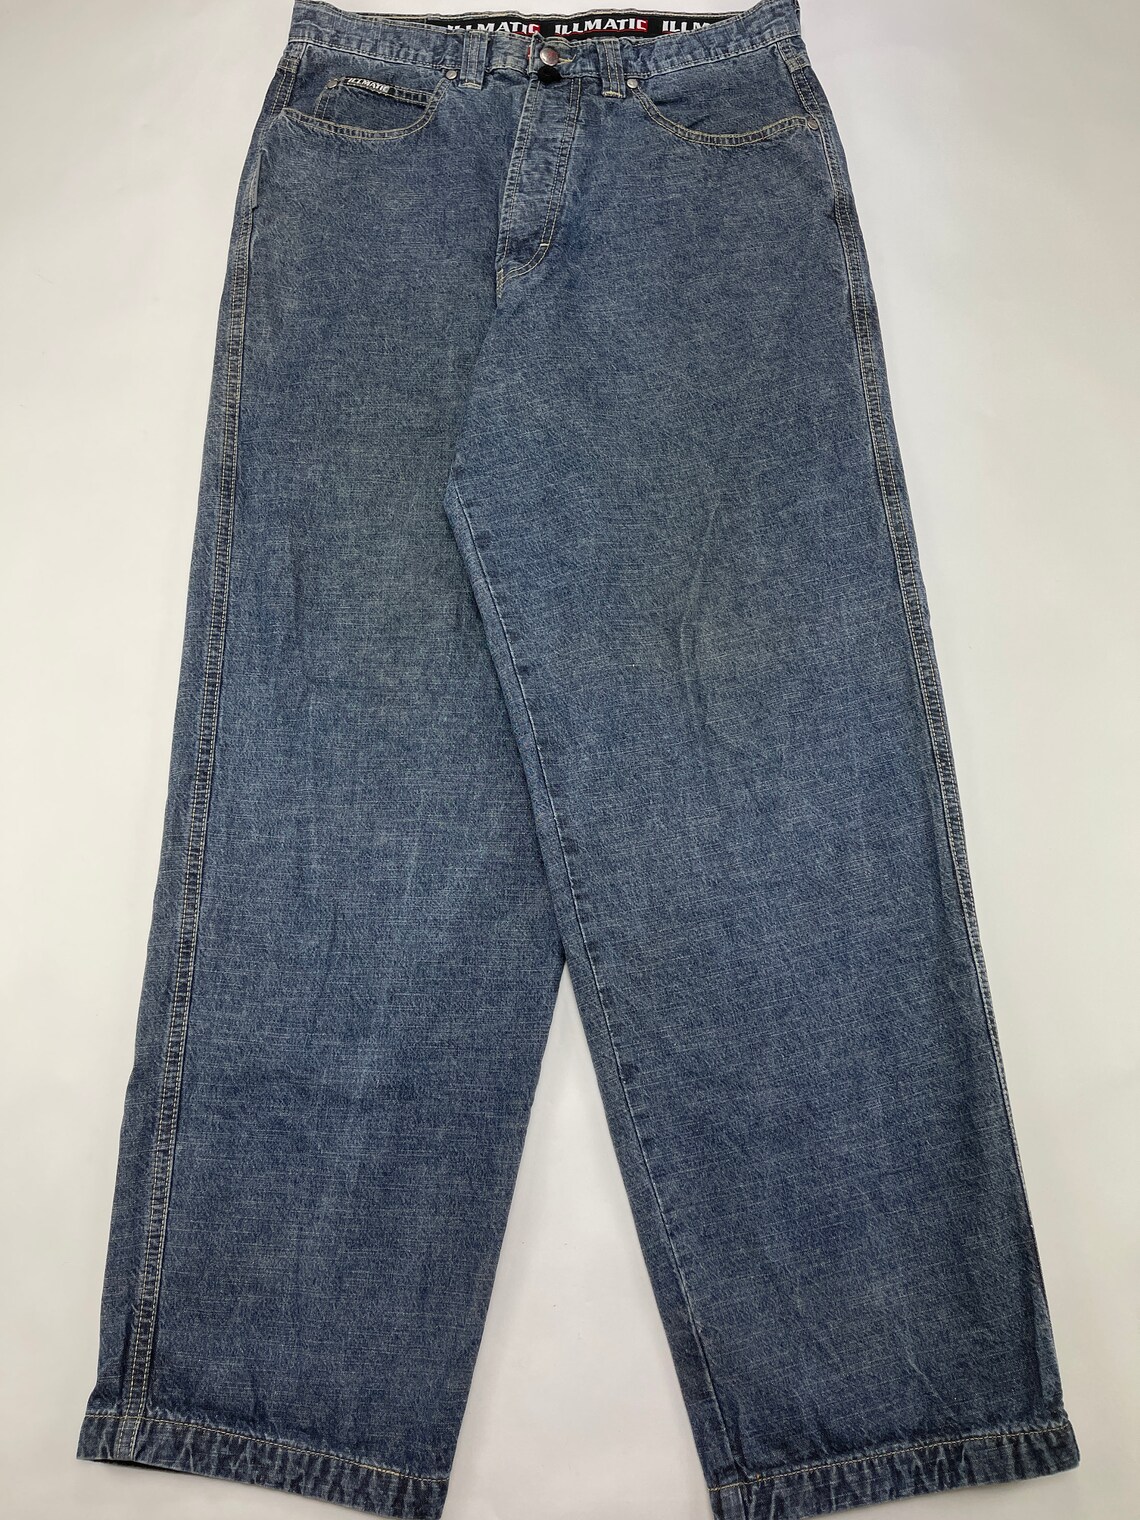 Nas Illmatic Designz Jeans Blue Vintage Baggy Jeans 90s Hip - Etsy